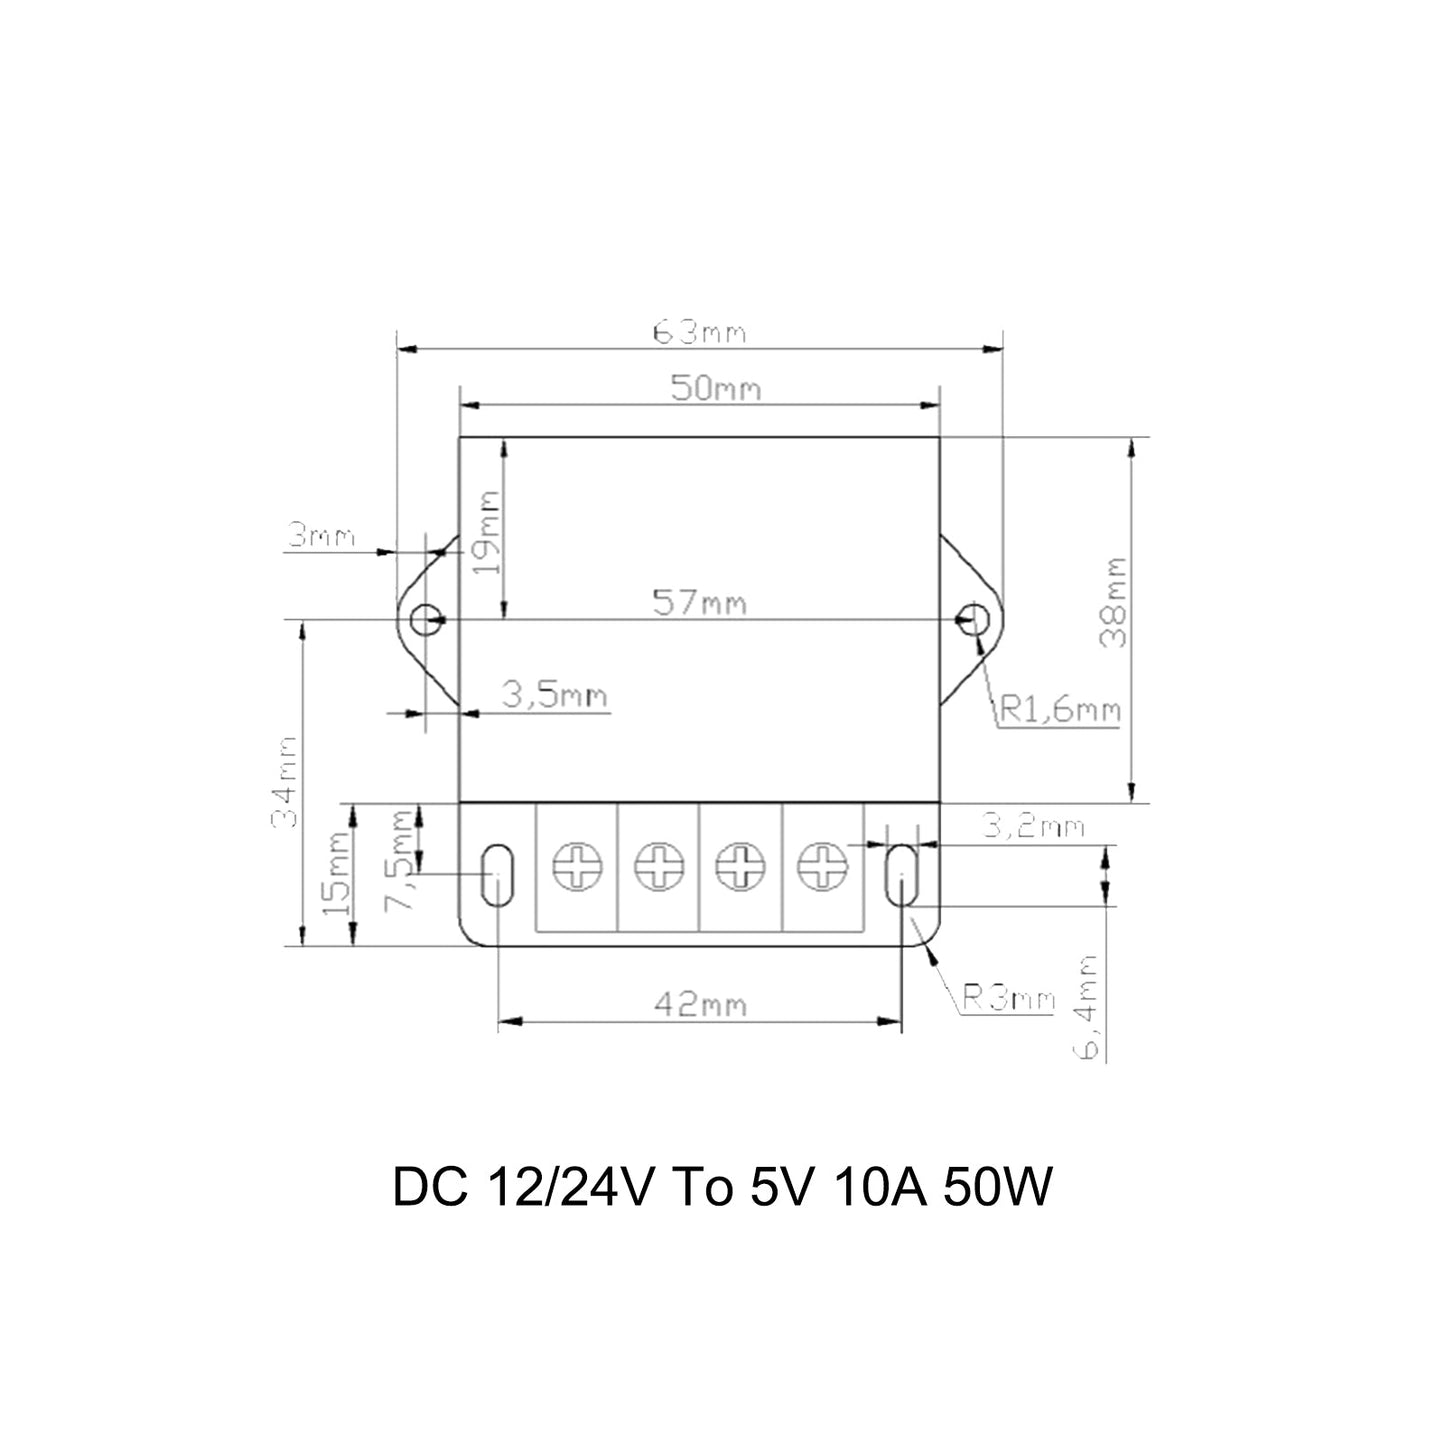 Régulateur de tension cc convertisseur abaisseur DC 12/24V à 5V 10A 50W réducteur abaisseur